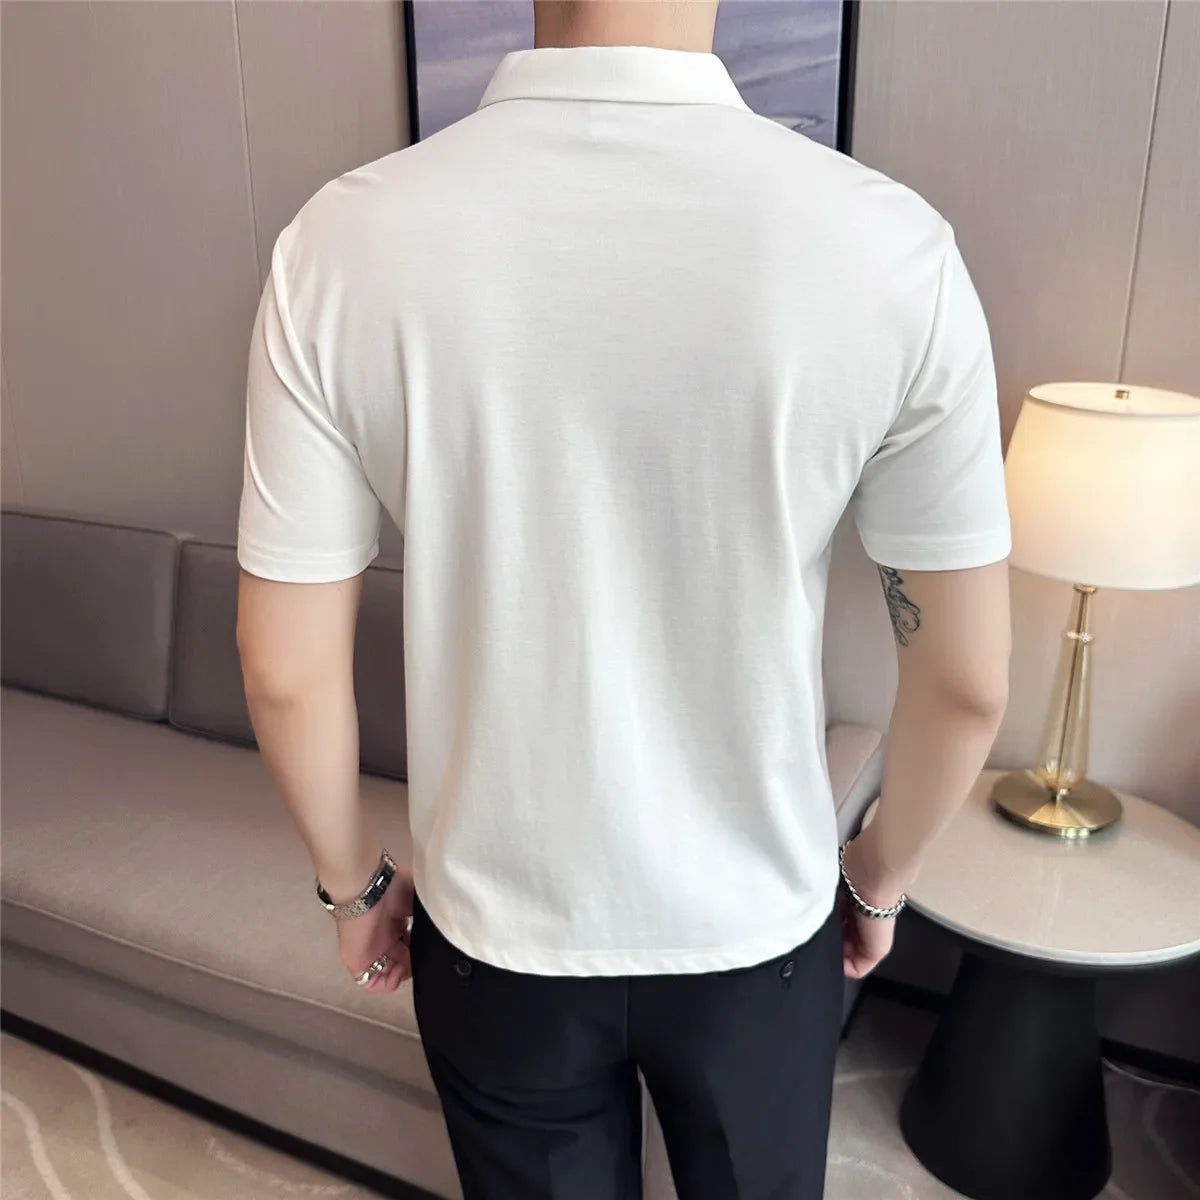 Men's Short-Sleeved Polo Shirt